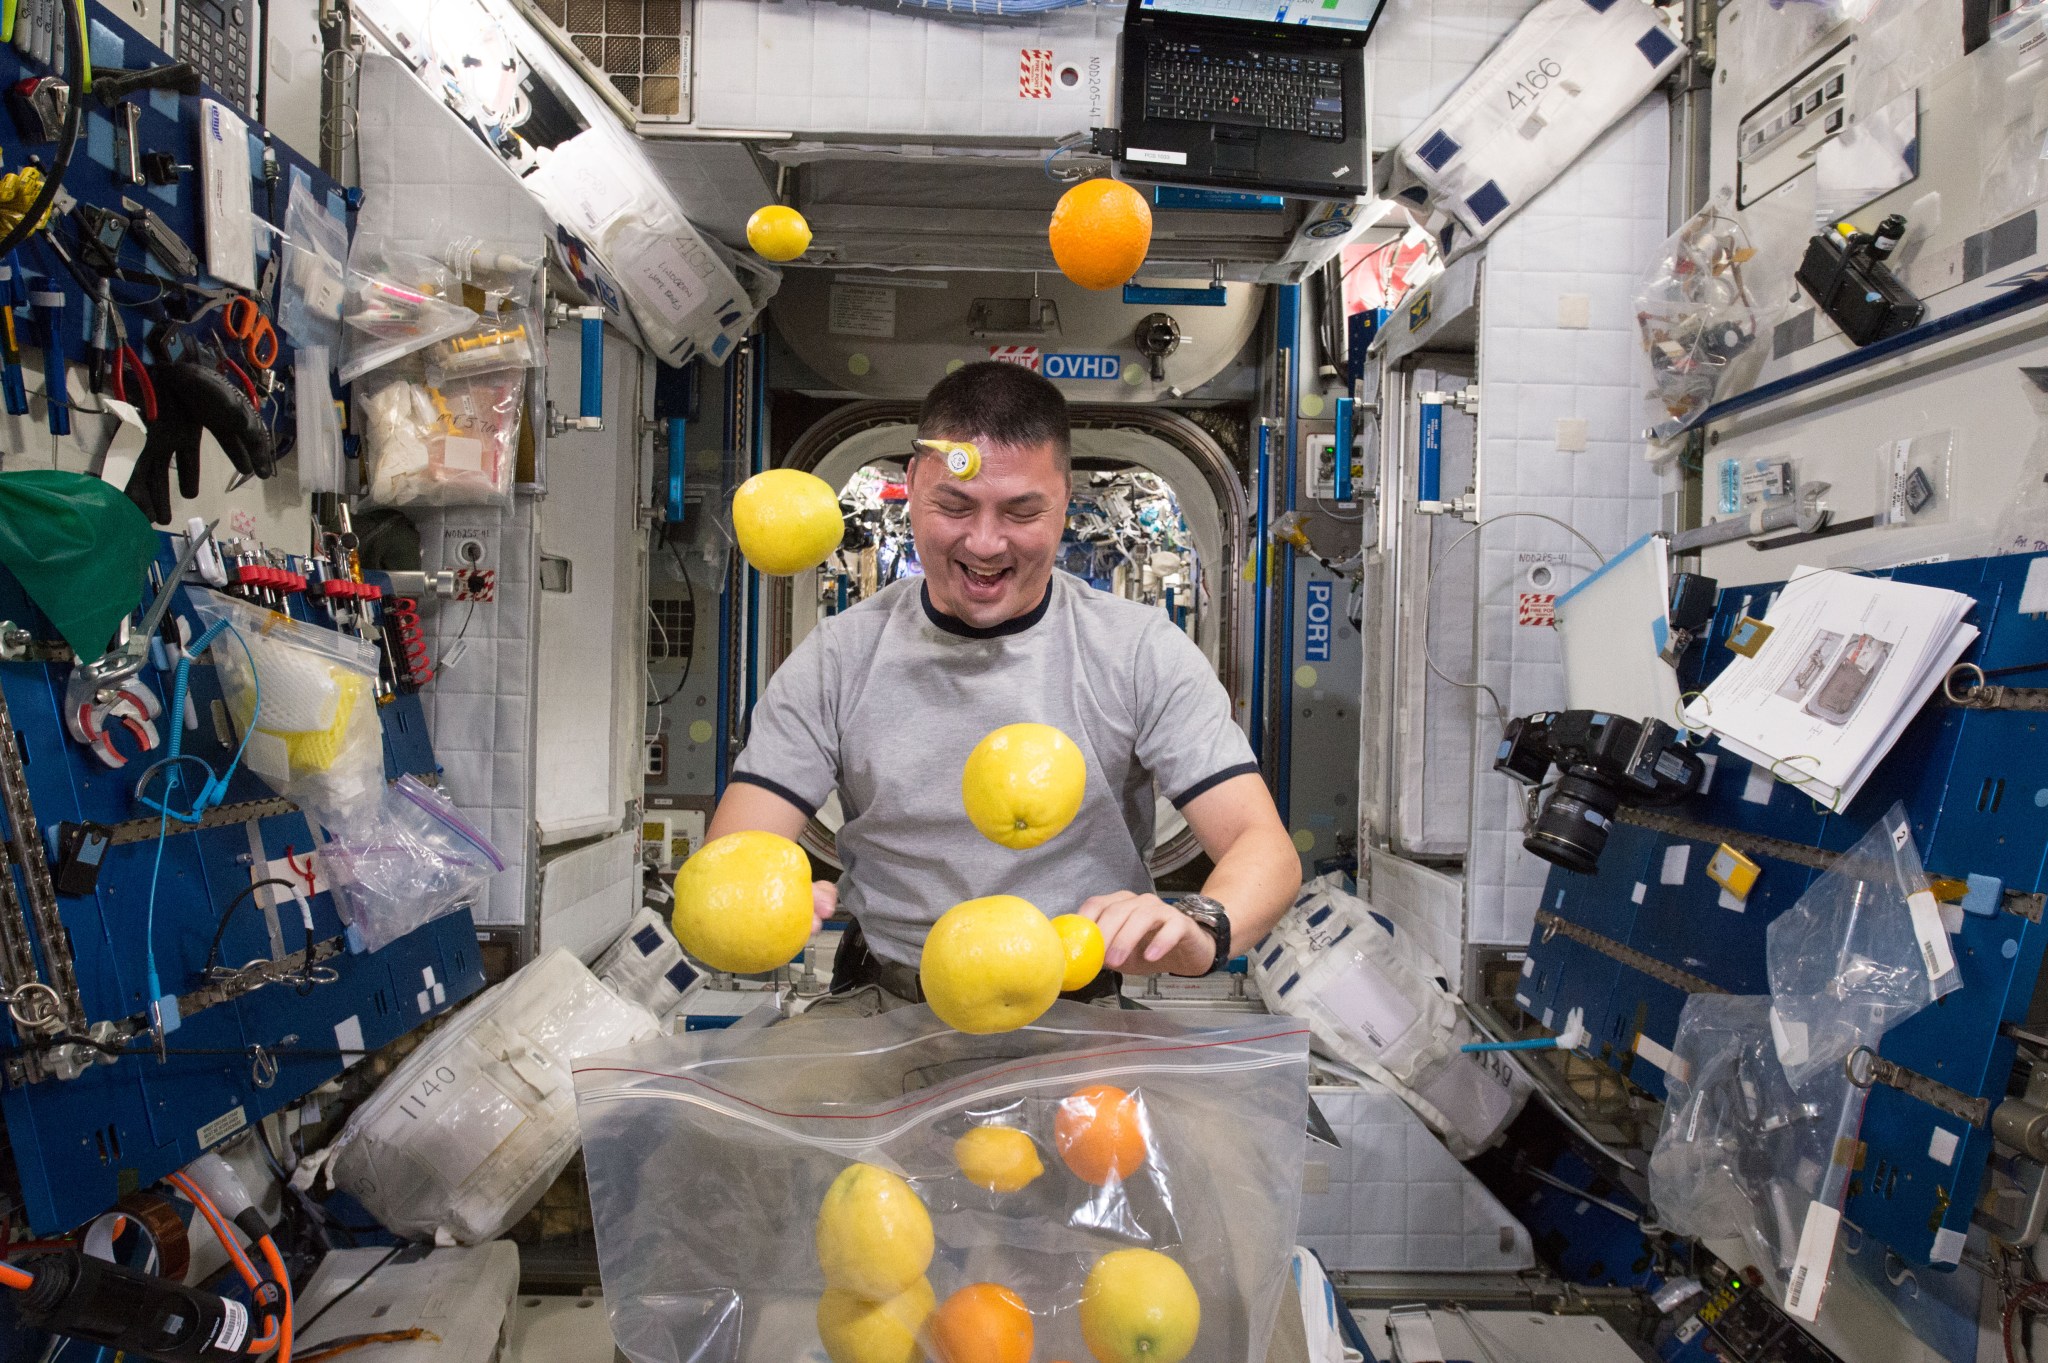 Astronaut Kjell Lindgren corrals a supply of fresh fruit